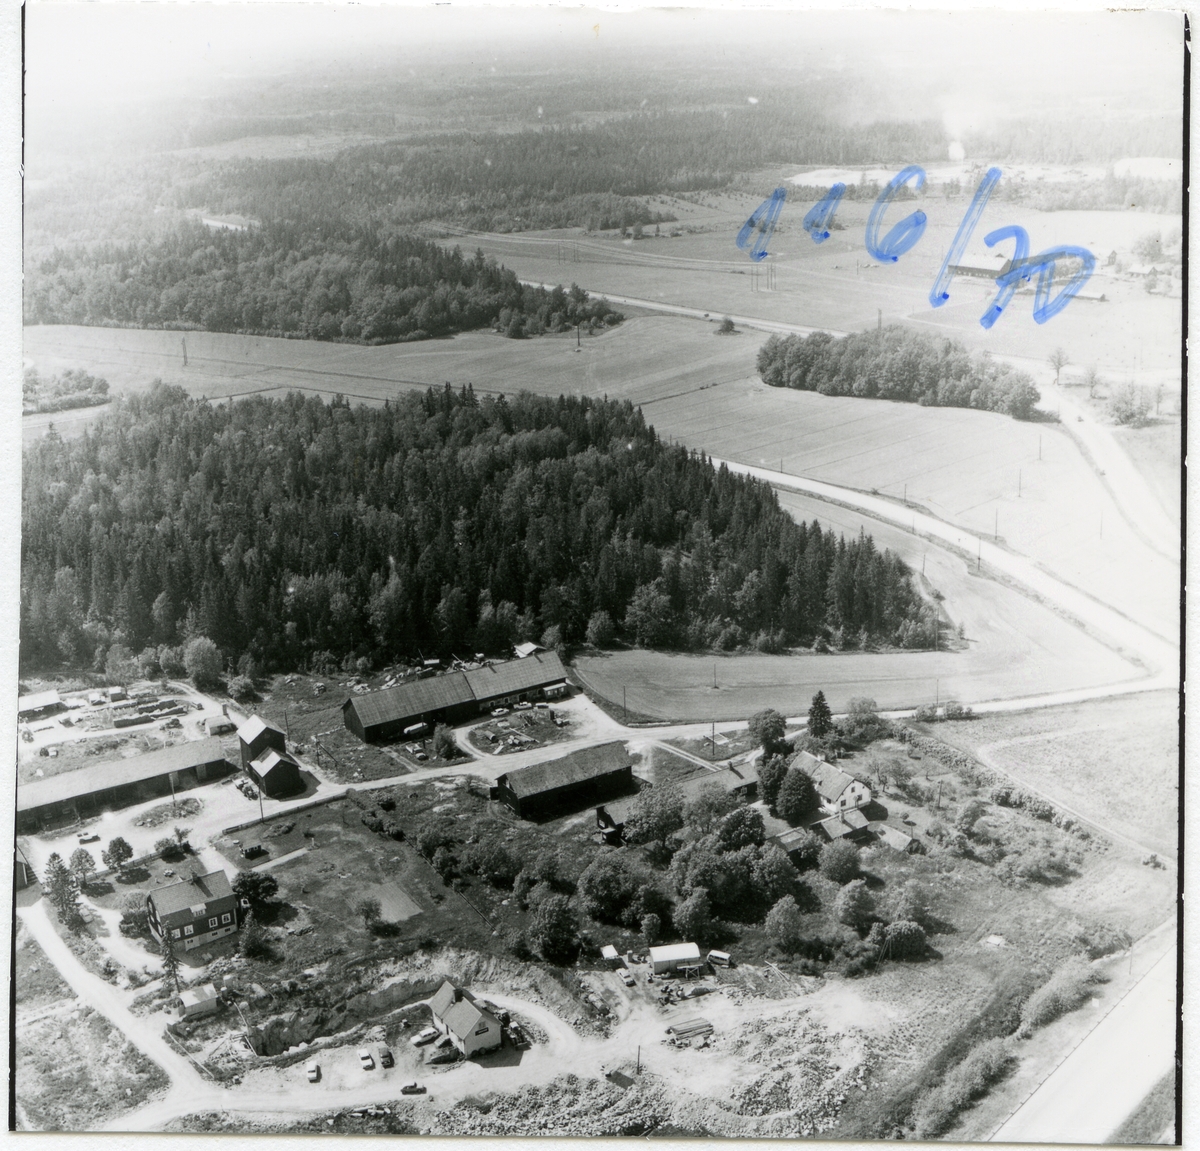 Västerås, Bäckby.
Bäckby gård från öster. 1970.